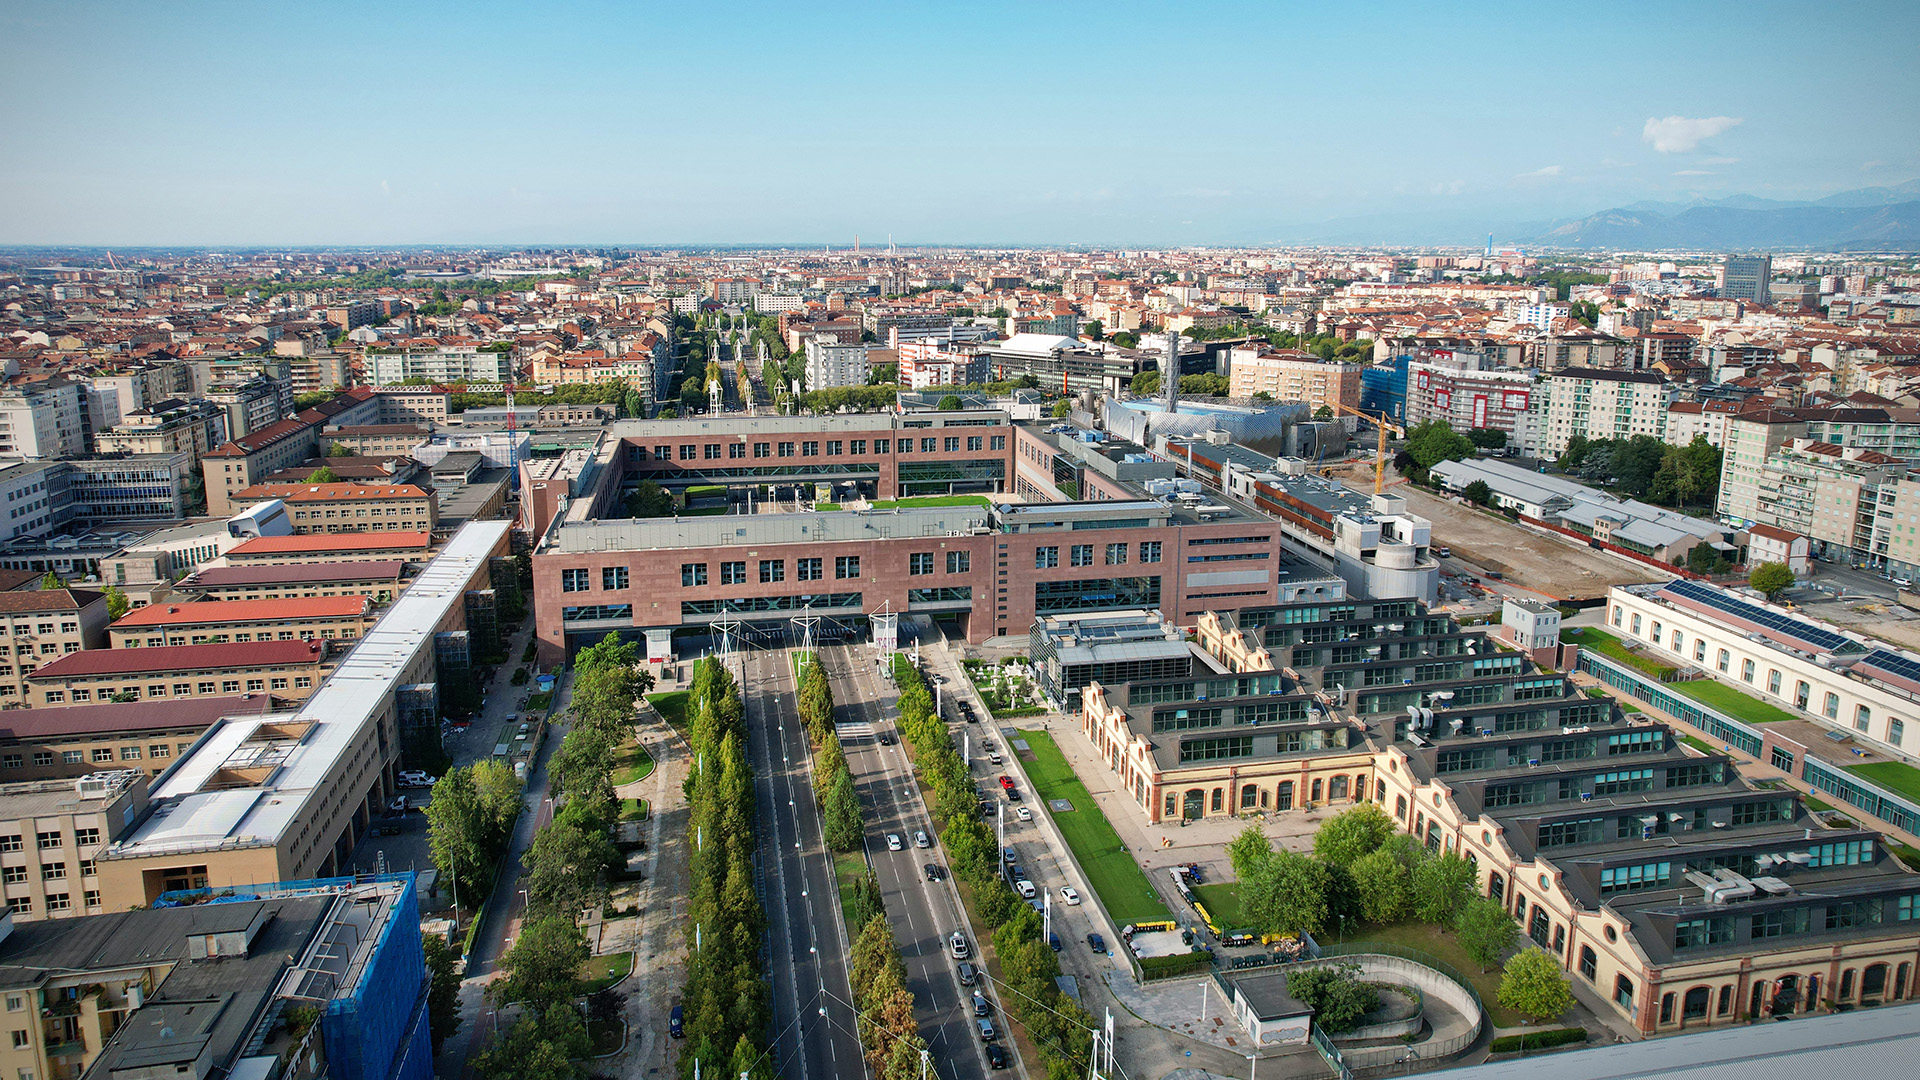 La sede centrale del Politecnico di Torino fotografata dall'alto